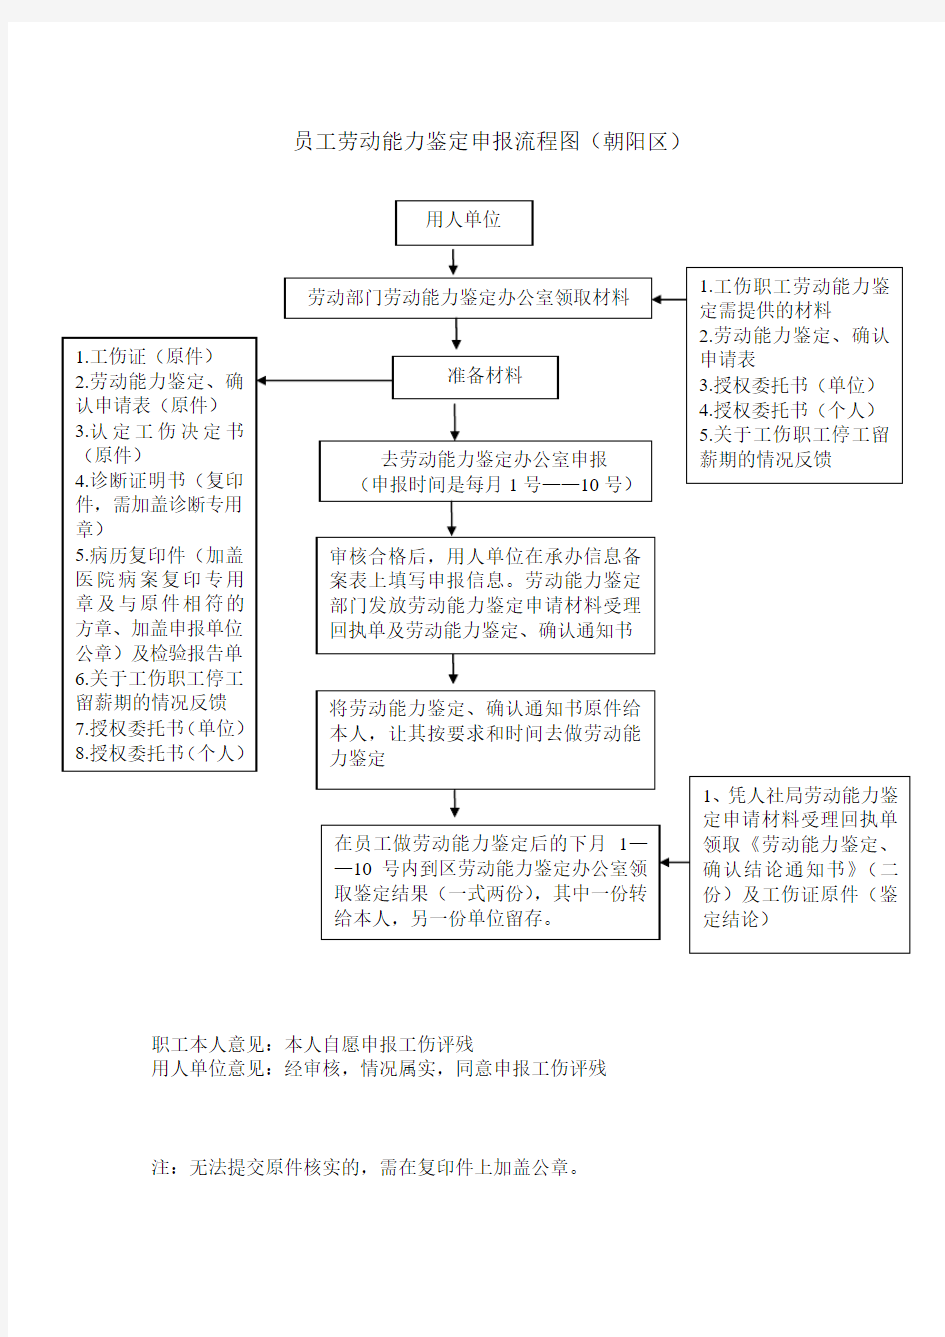 员工劳动能力鉴定申报流程图(朝阳区)